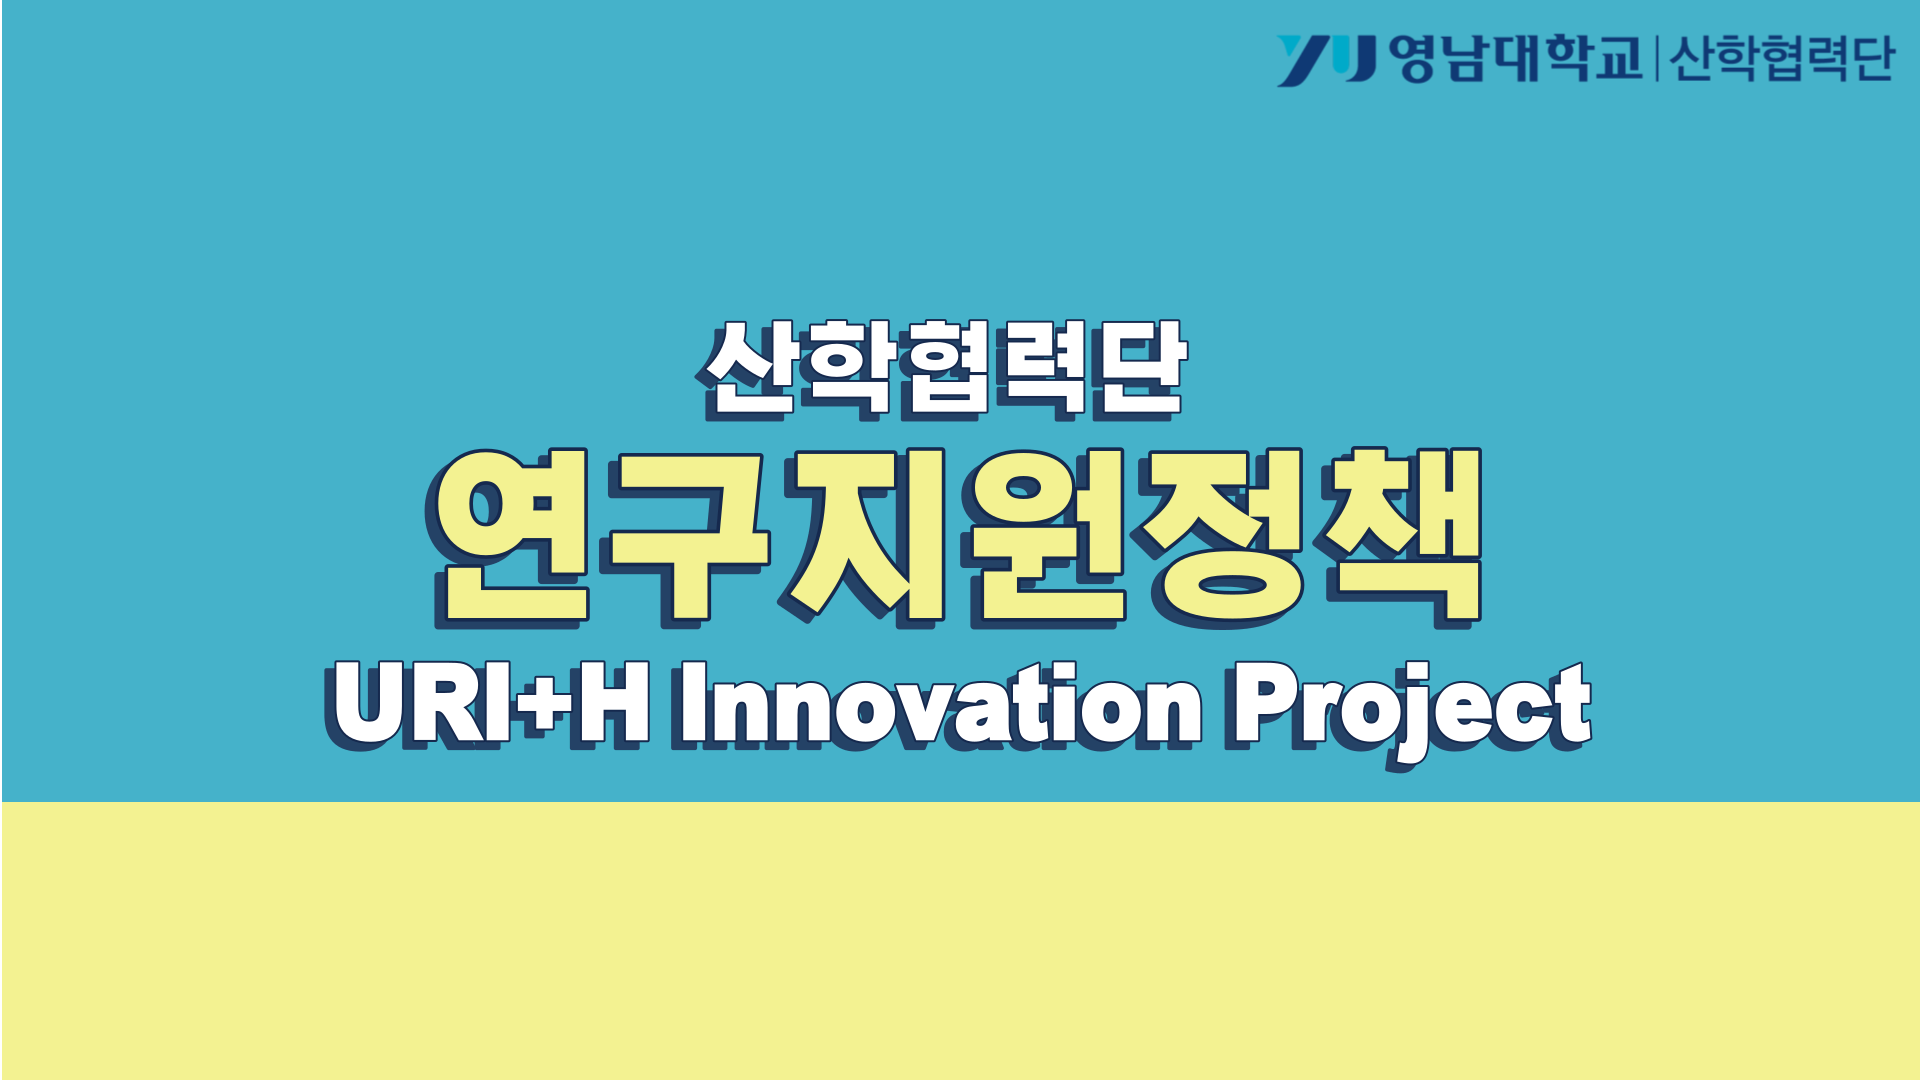 영남대학교 산학협력단 연구지원 정책 :  URI+H Innovation Project